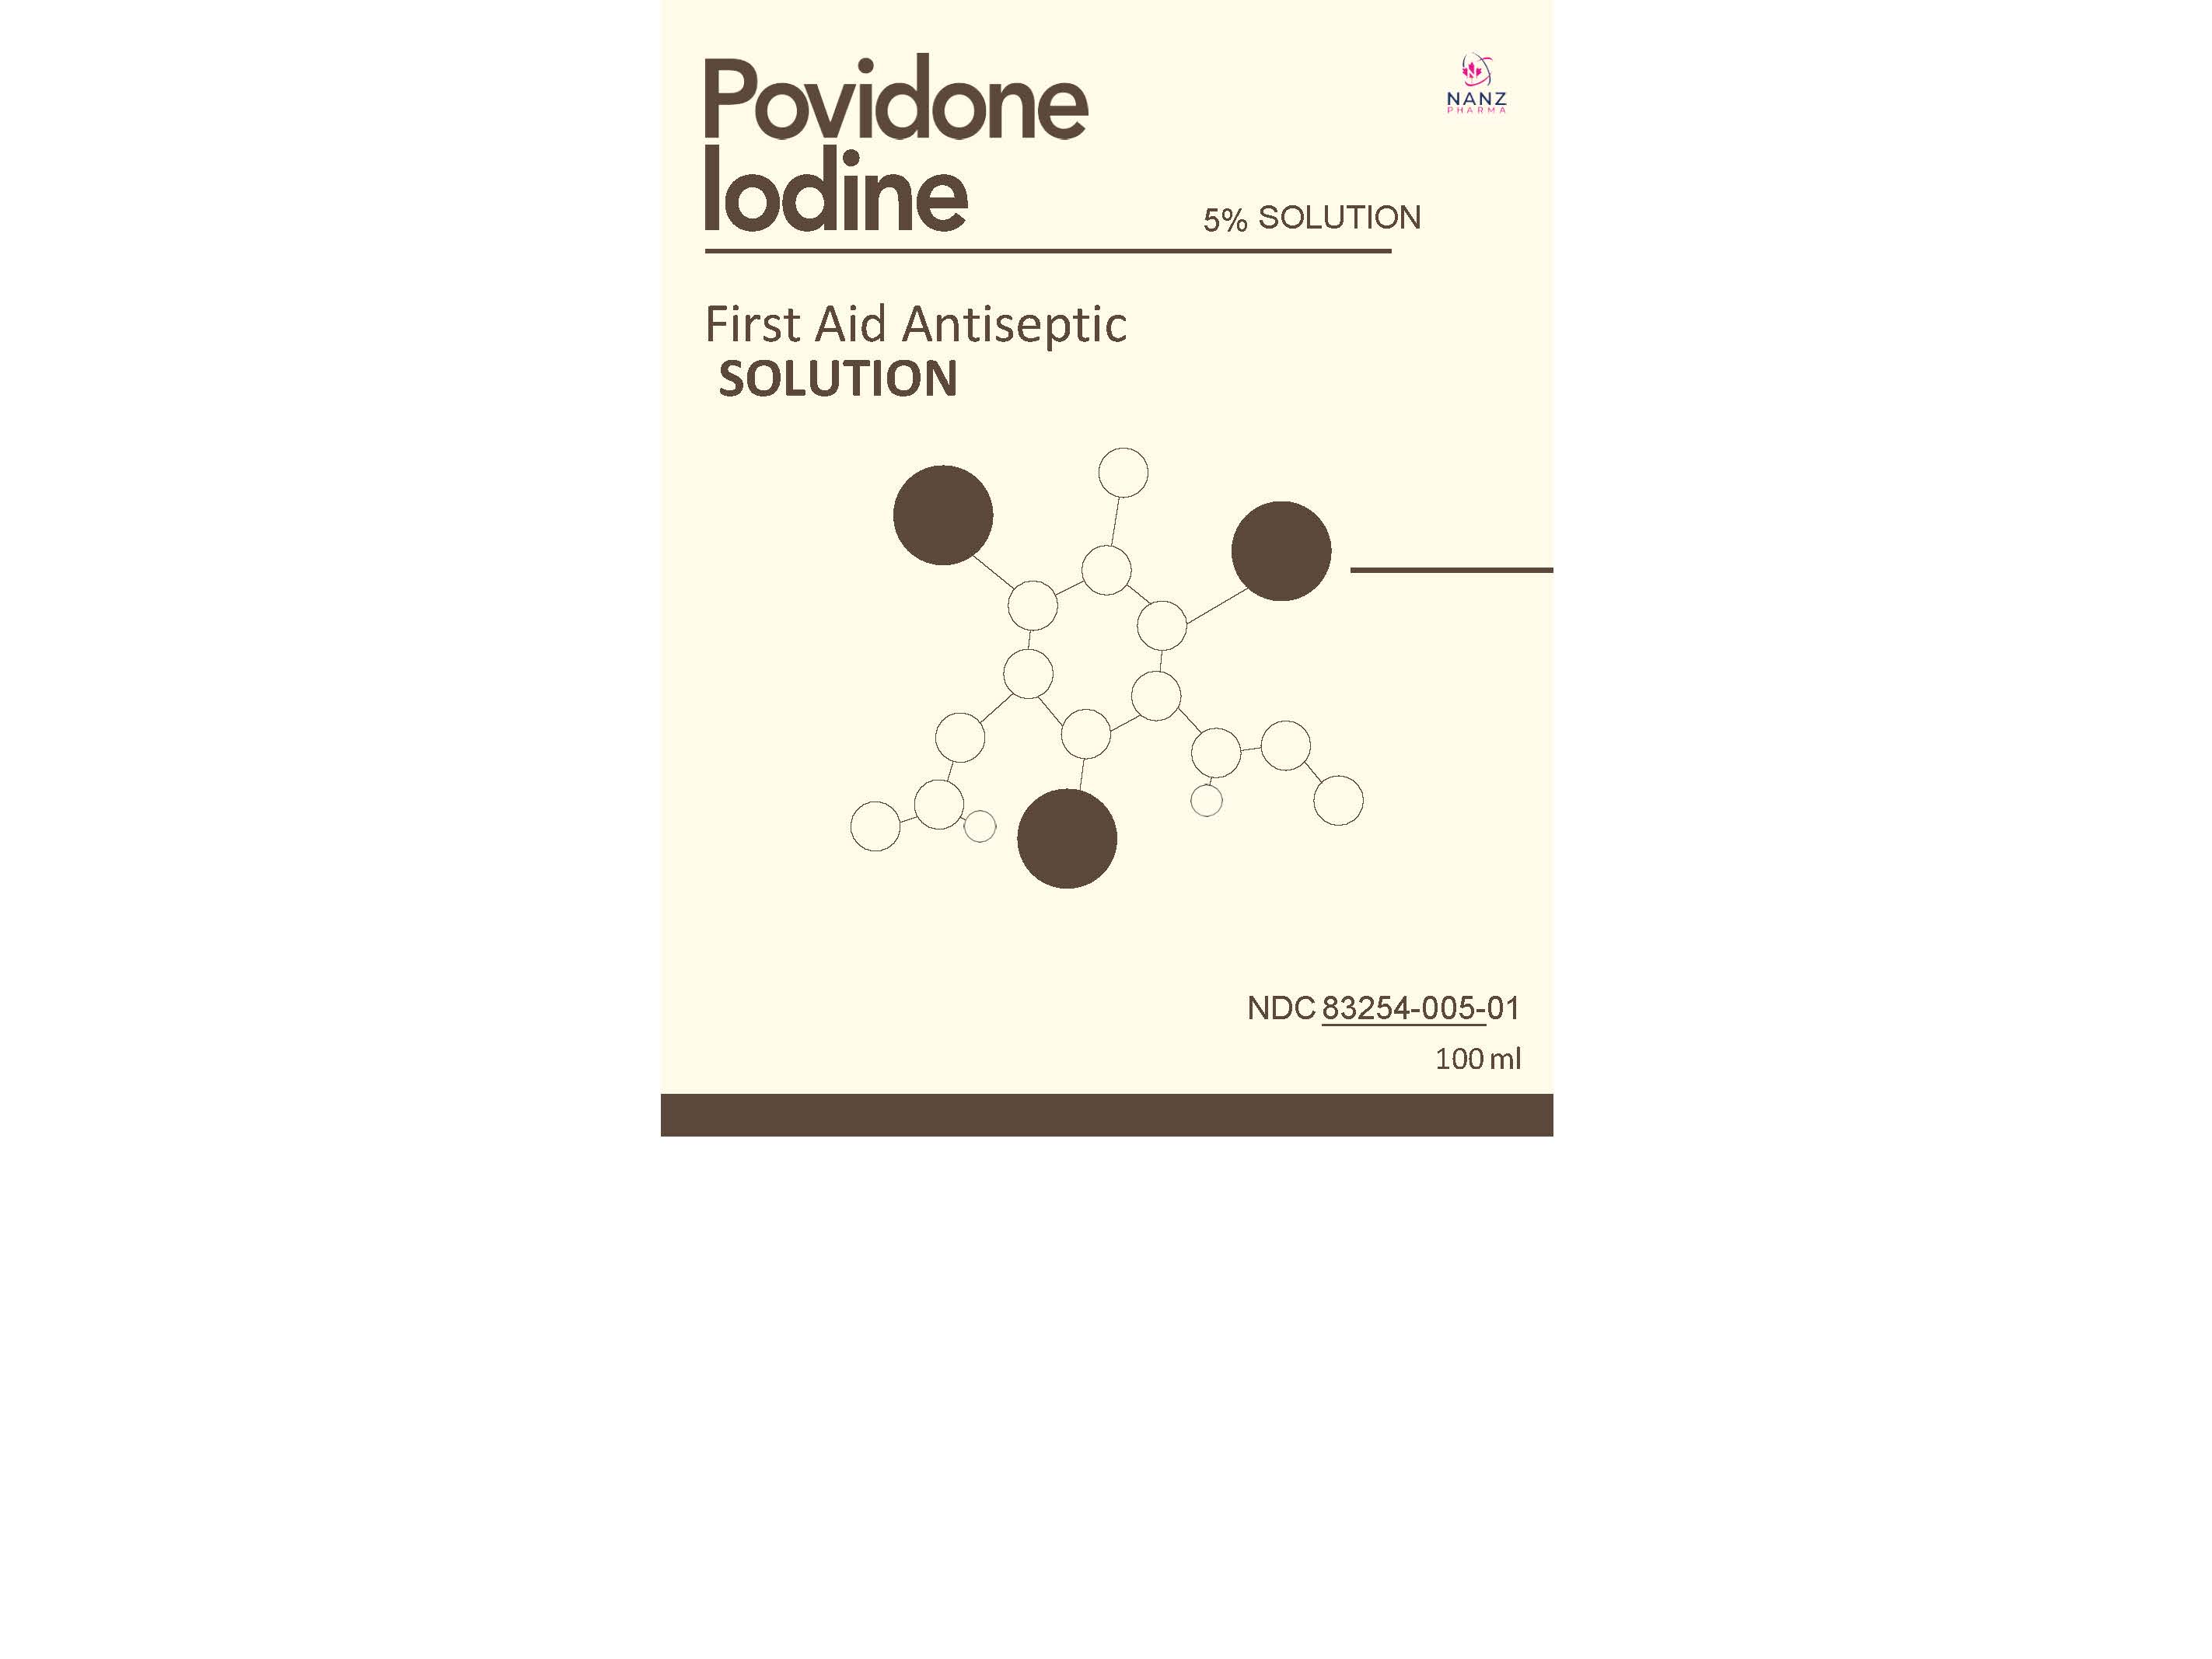 Label for all povidone iodine 5 percent